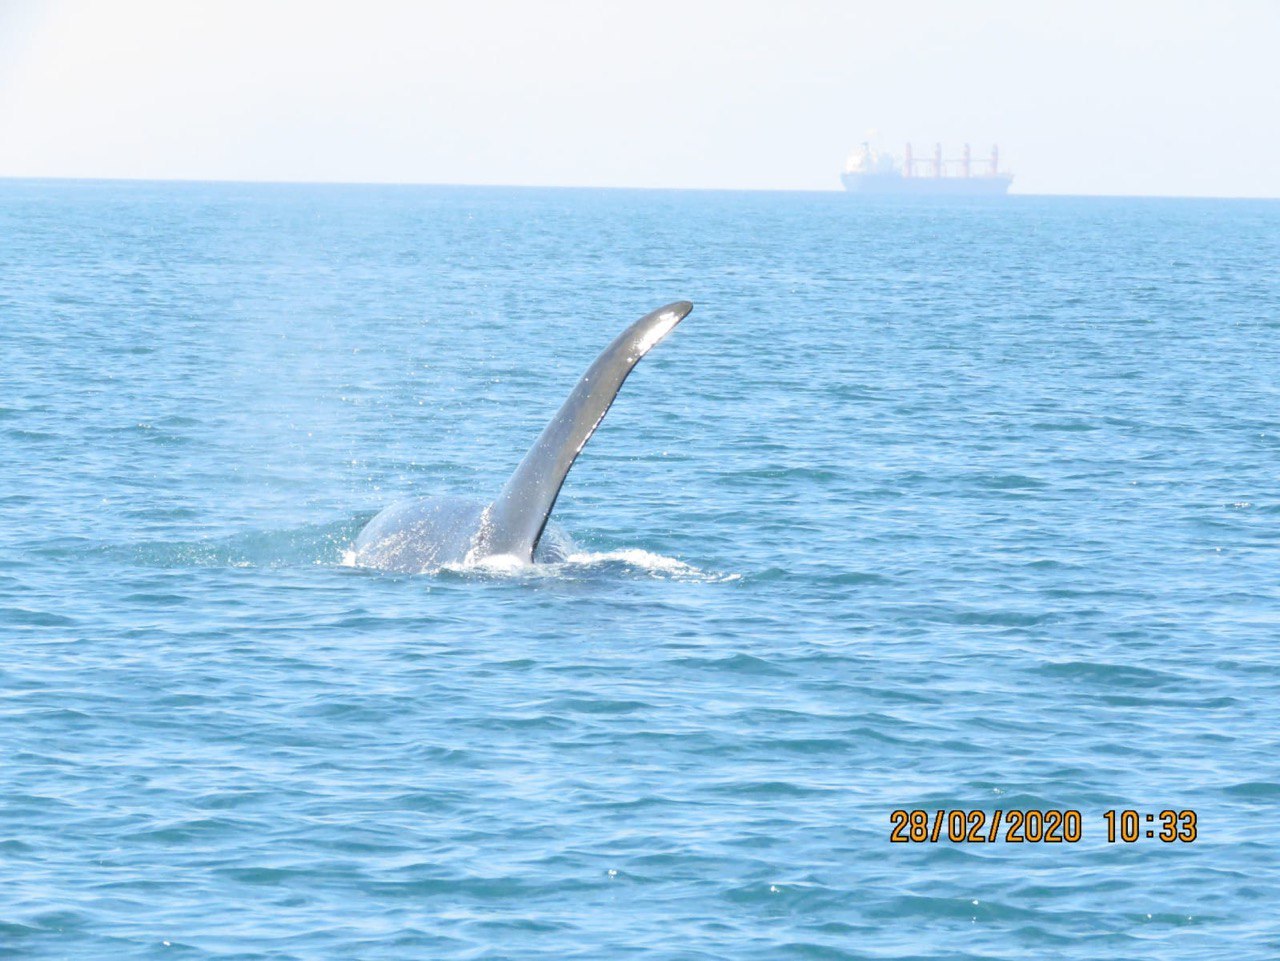 רשות הטבע והגנים: הבוקר קיבלנו דיווח מצוללנים שראו לוויתן מול חופי שבי ציון